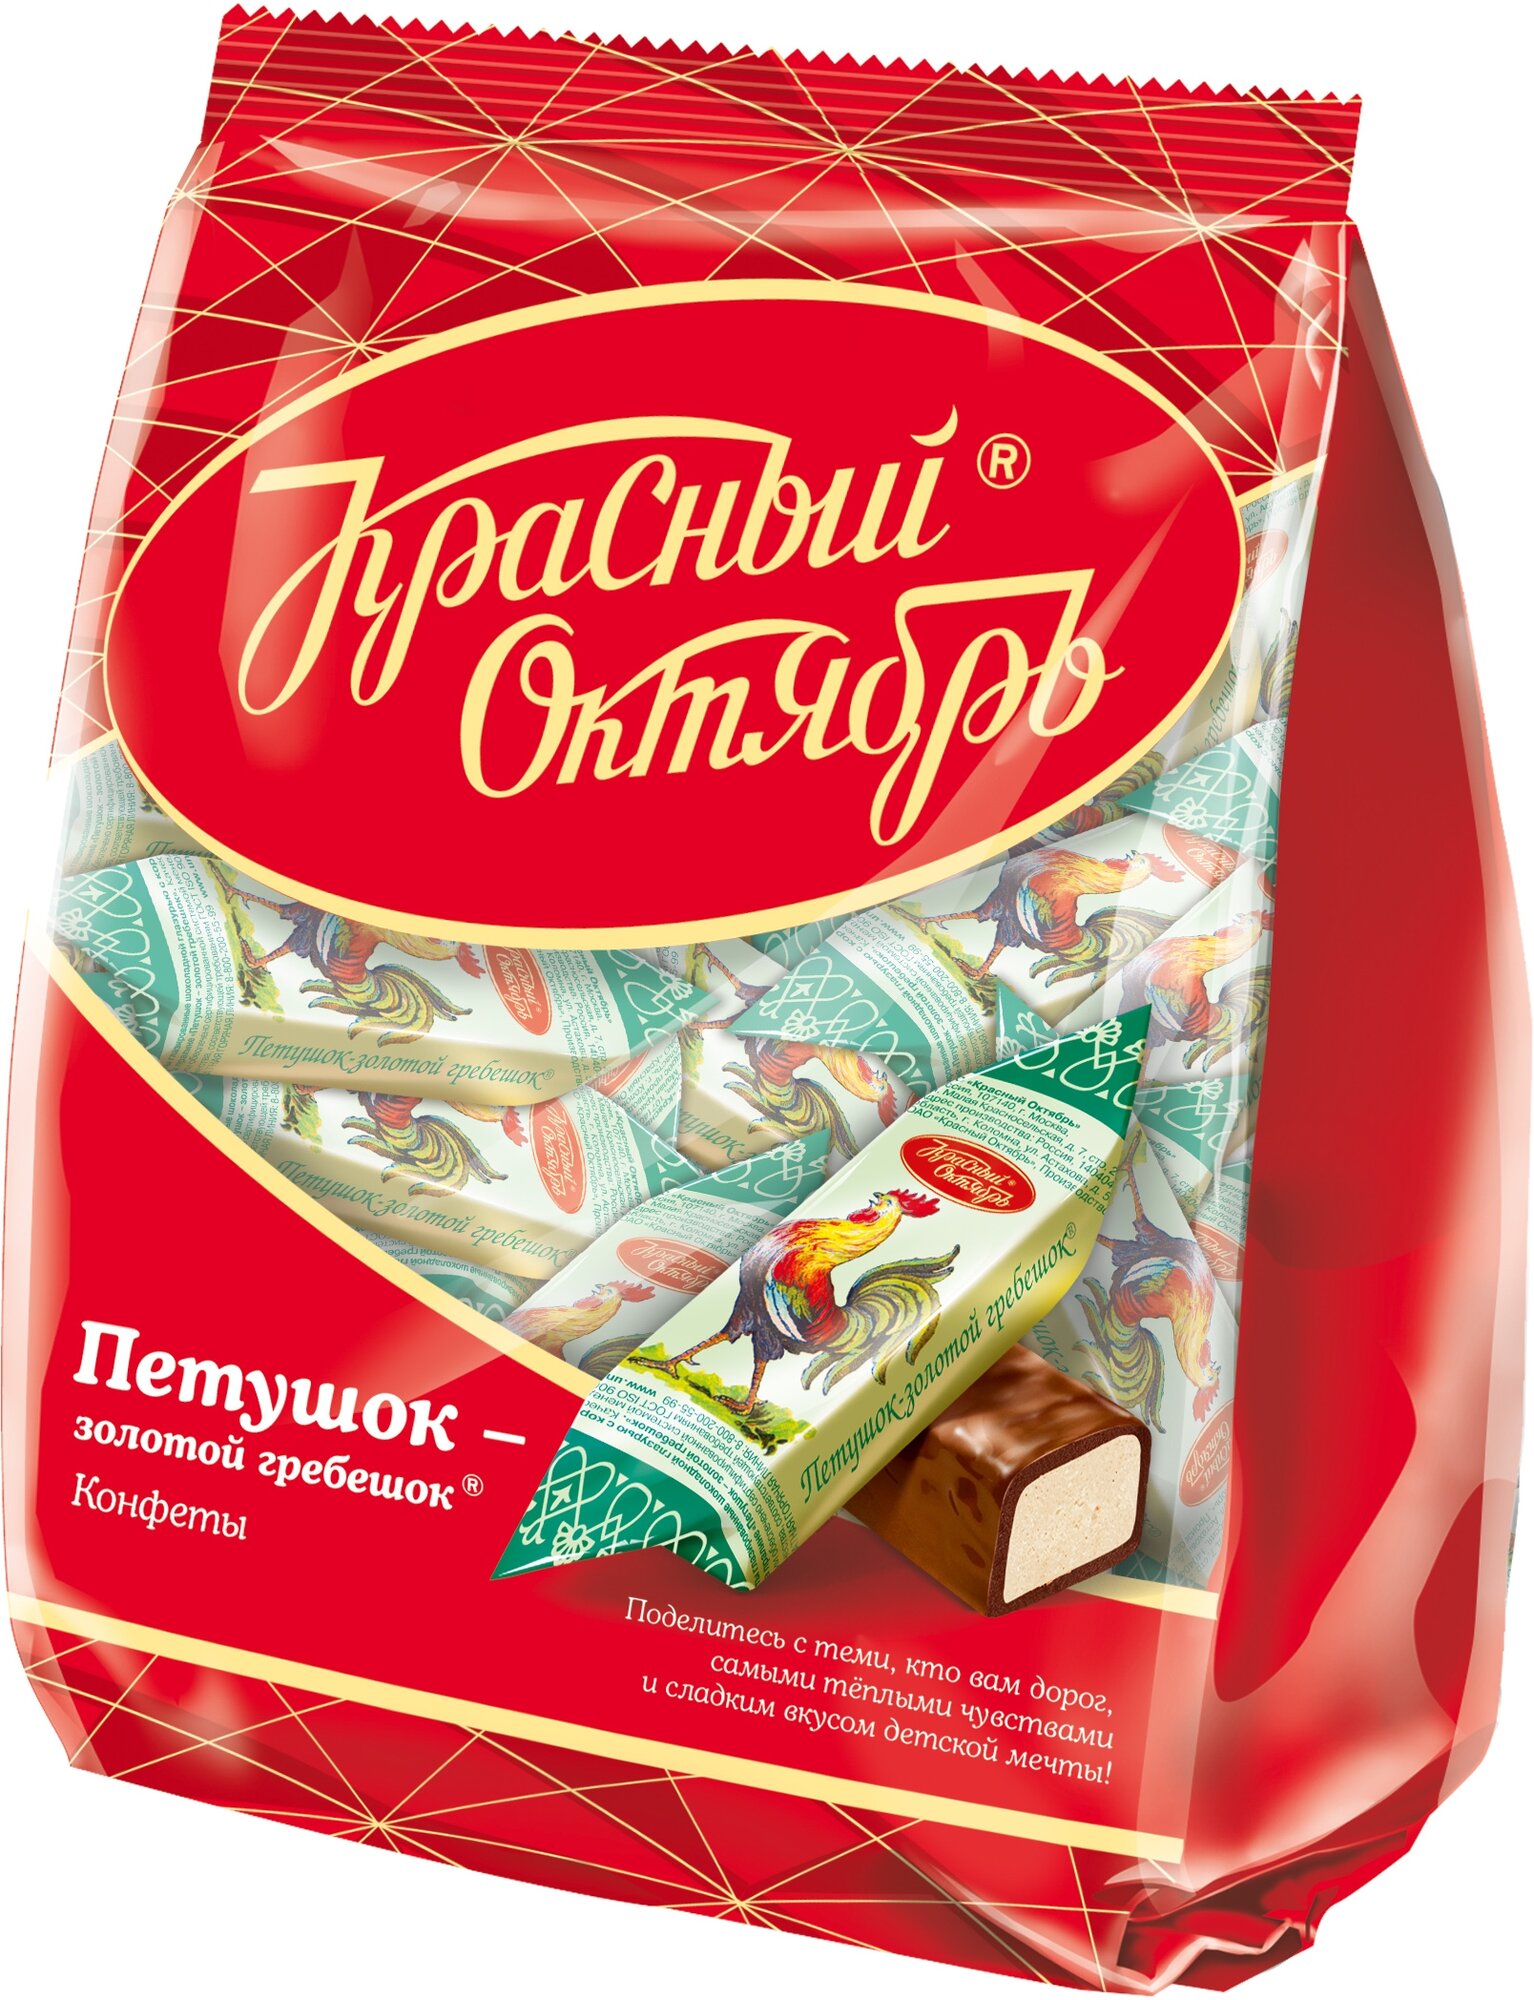 Конфеты Петушок золотой гребешок, Красный Октябрь, 250 гр.